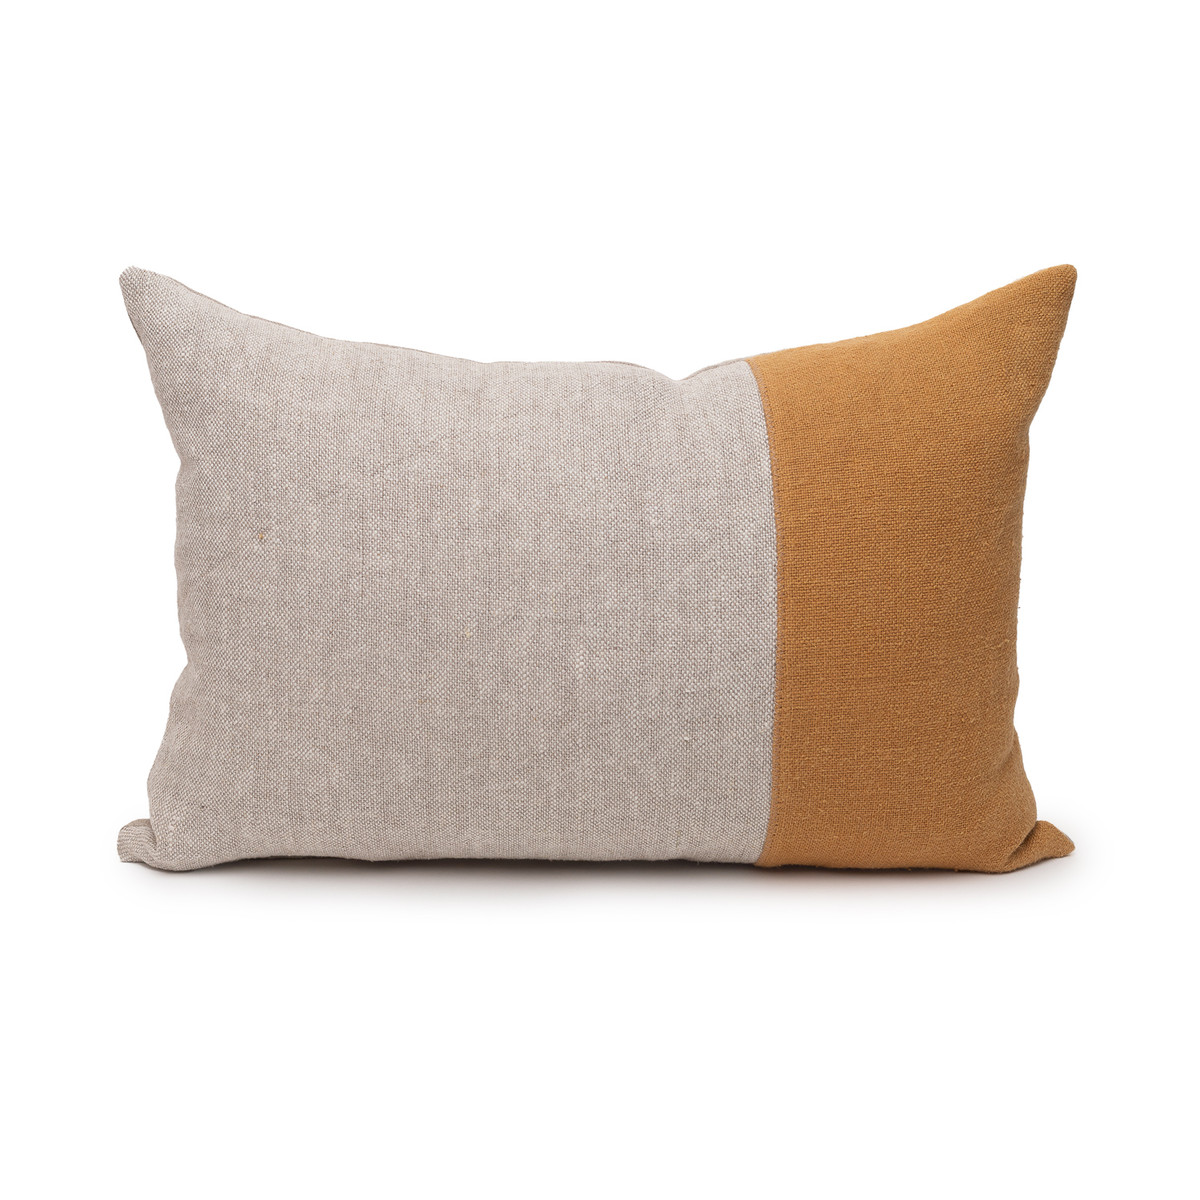 Dime Dijon Mustard and Natural Linen Lumbar Pillow - 14 x 20  -Front